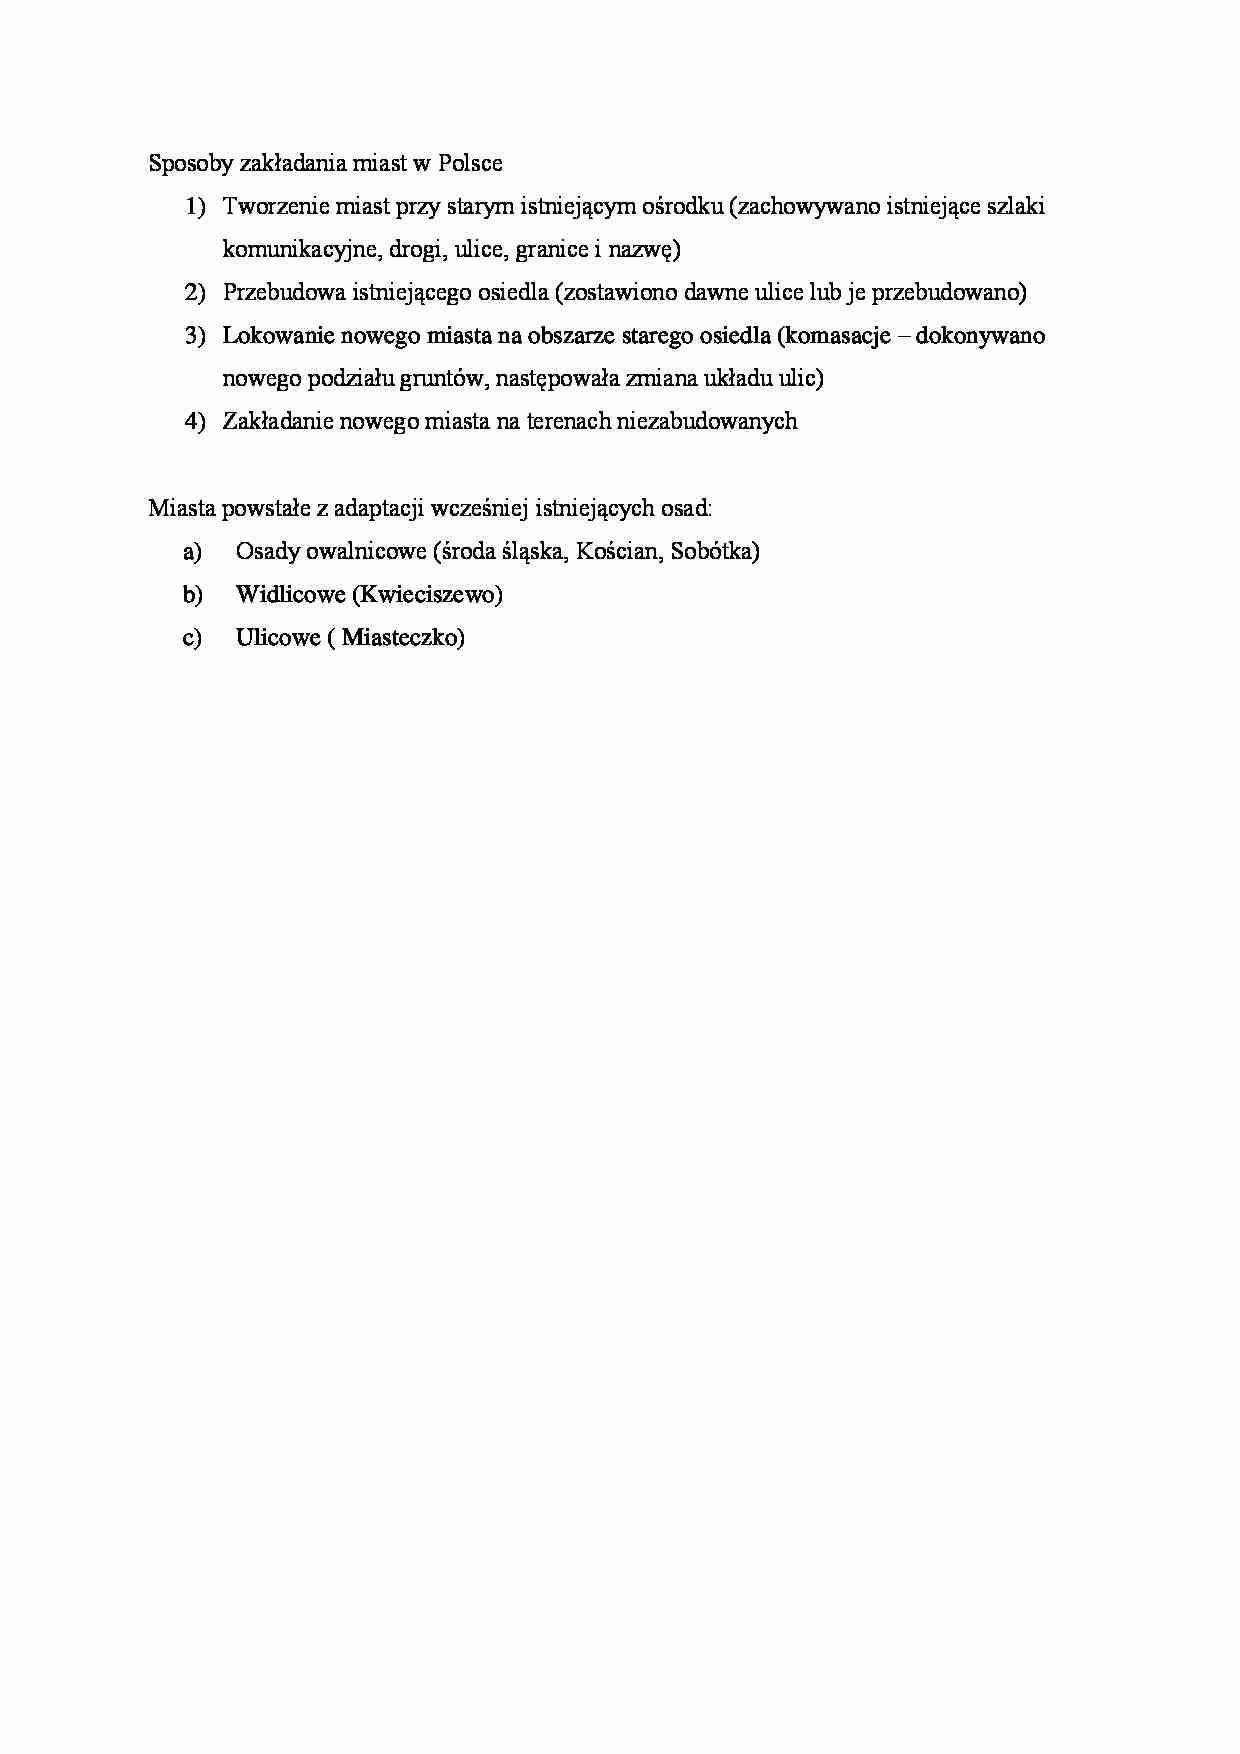 Sposoby zakładania miast w Polsce - strona 1